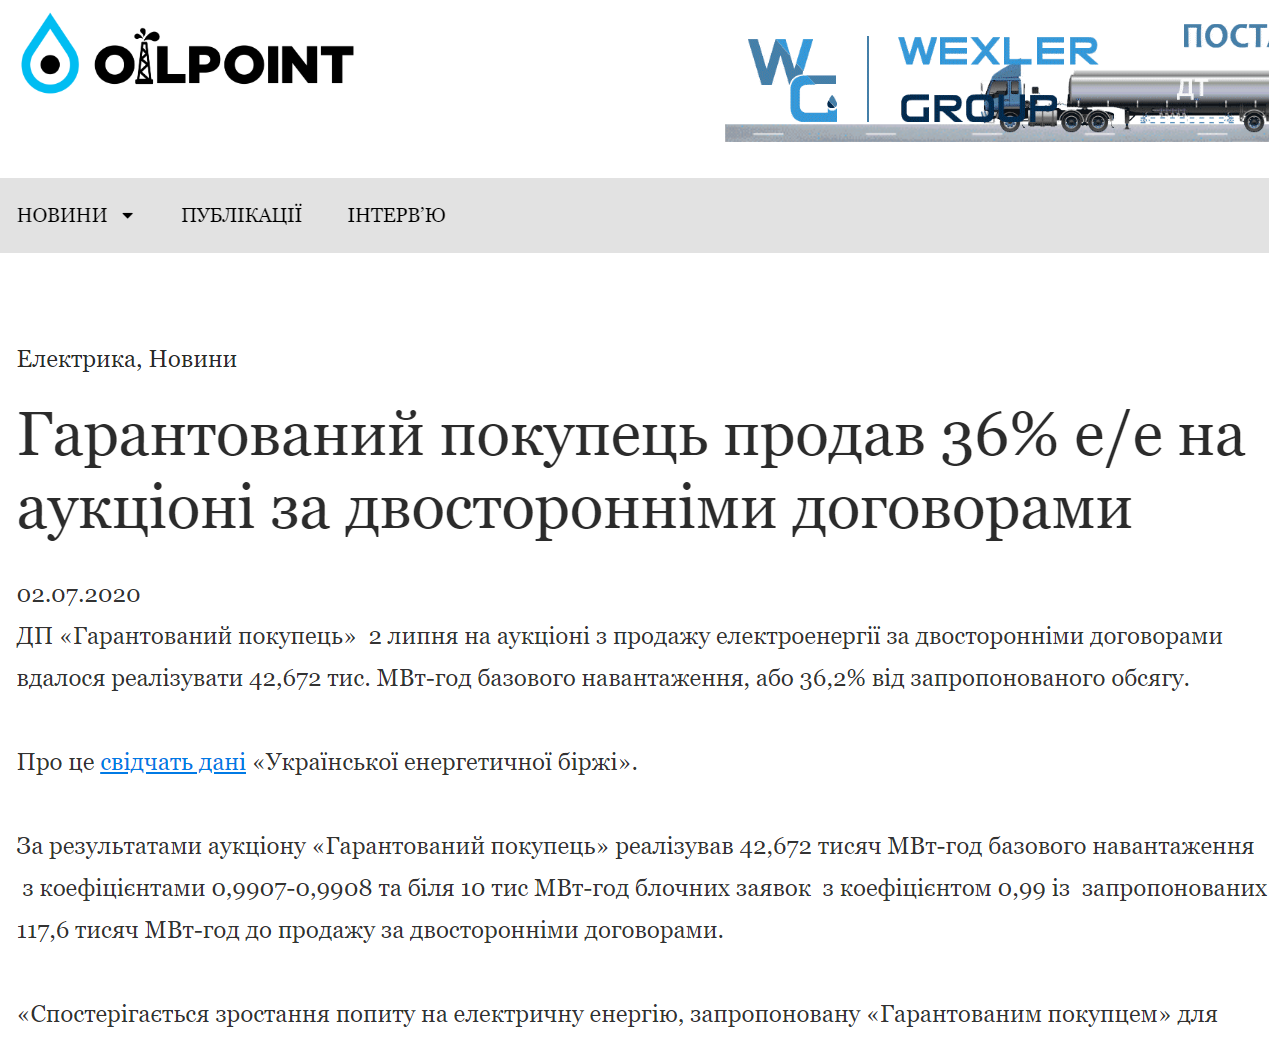 Оilpoint: Гарантований покупець продав 36% е/е на аукціоні за двосторонніми договорами 